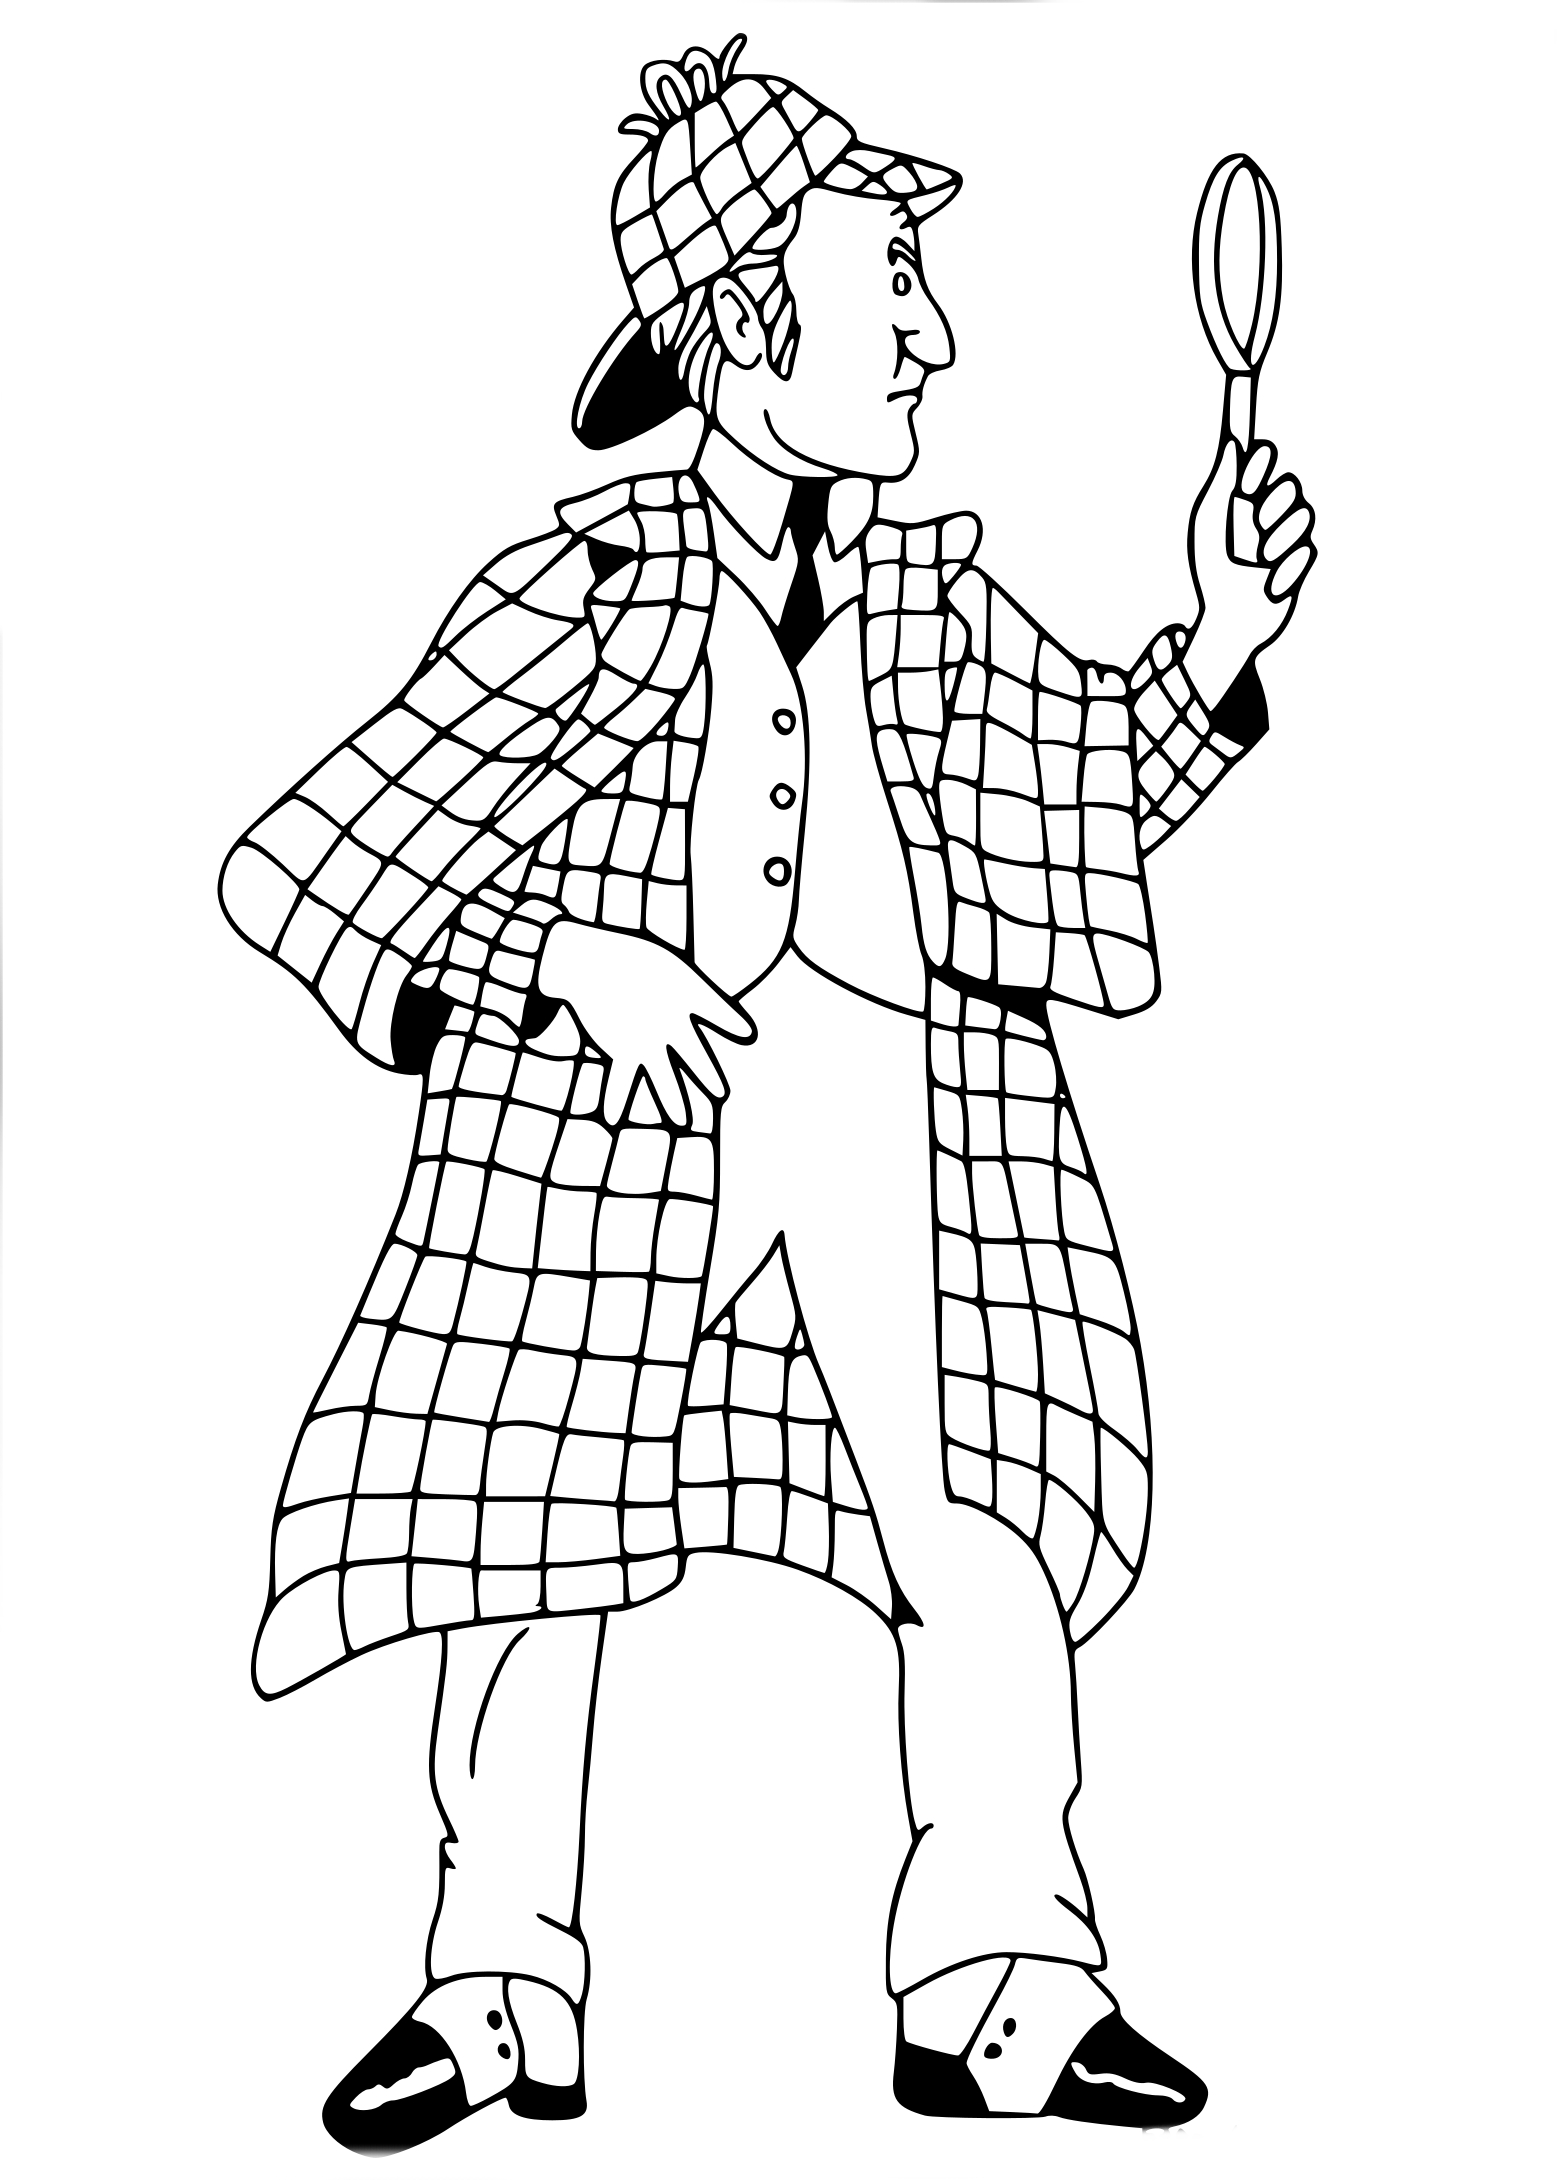 Disegno di Sherlock Holmes da colorare